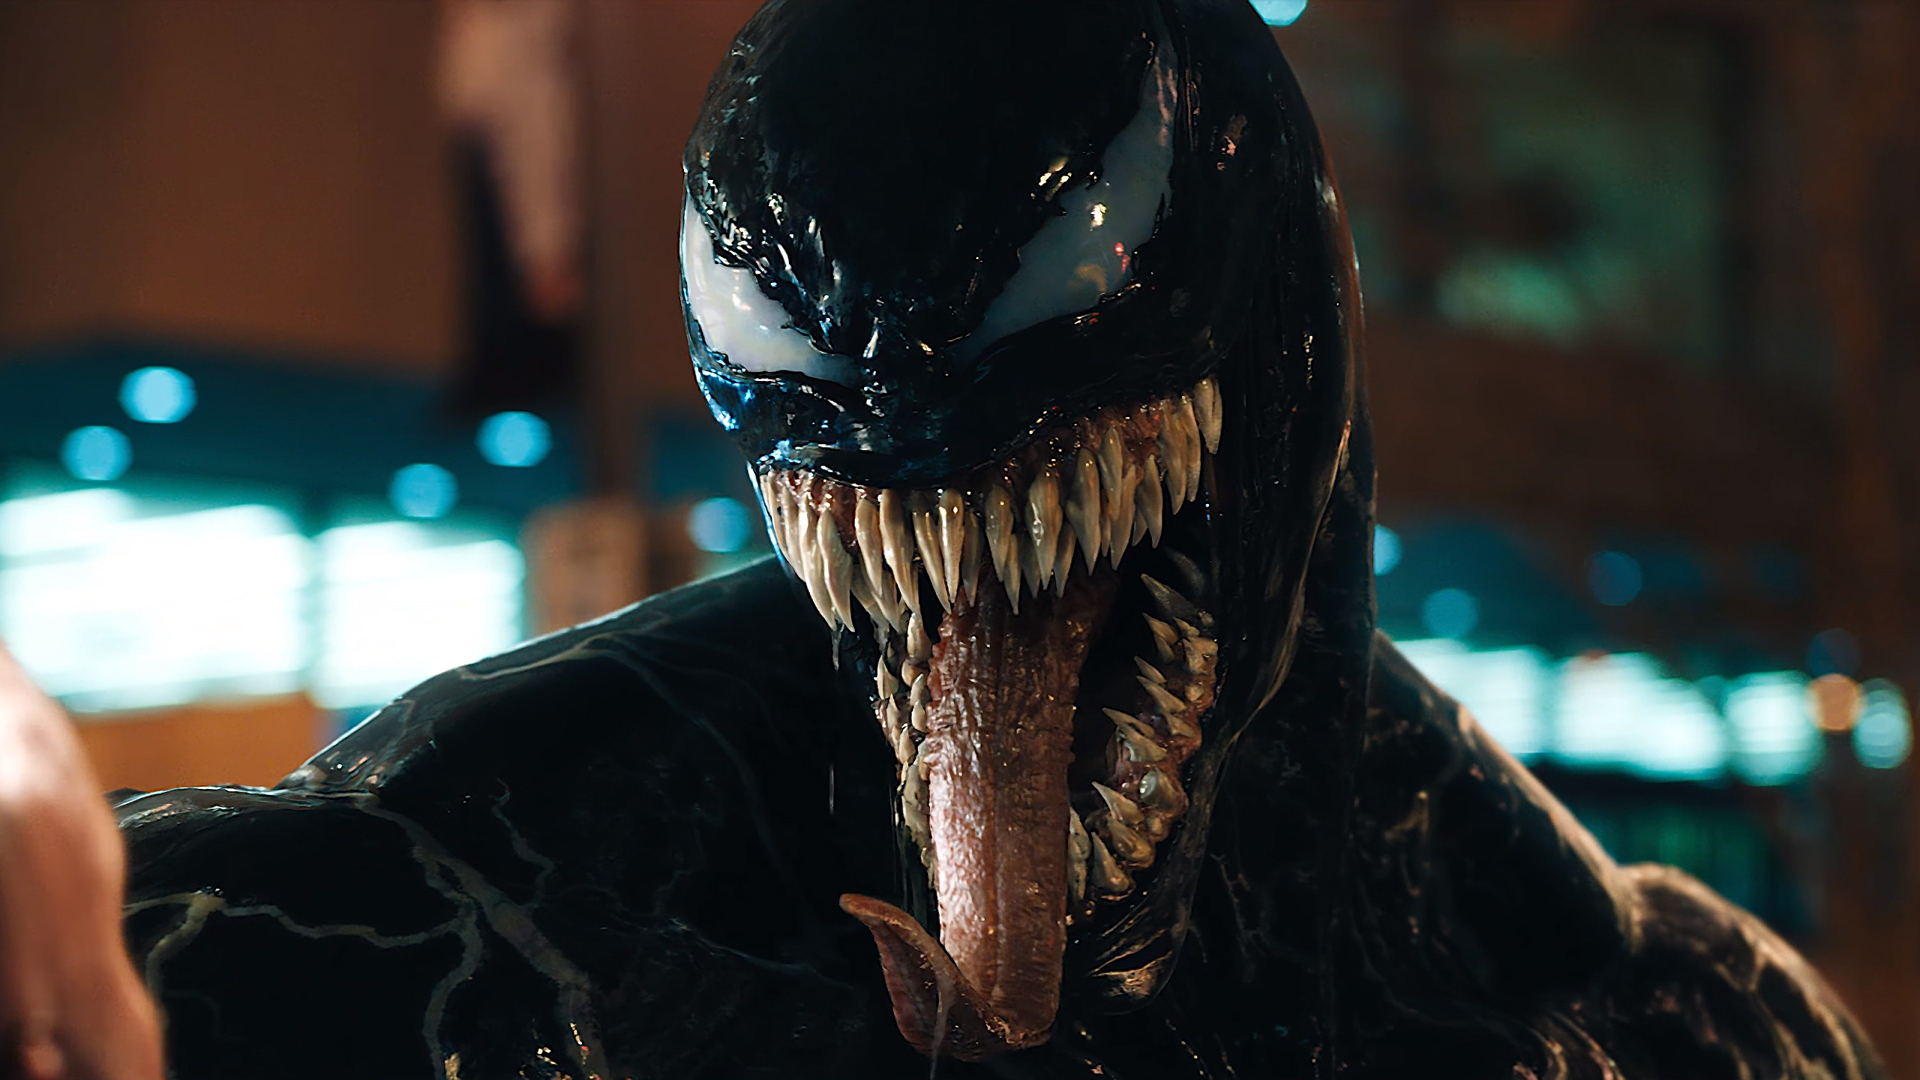 Movie Venom HD Wallpaper | Background Image